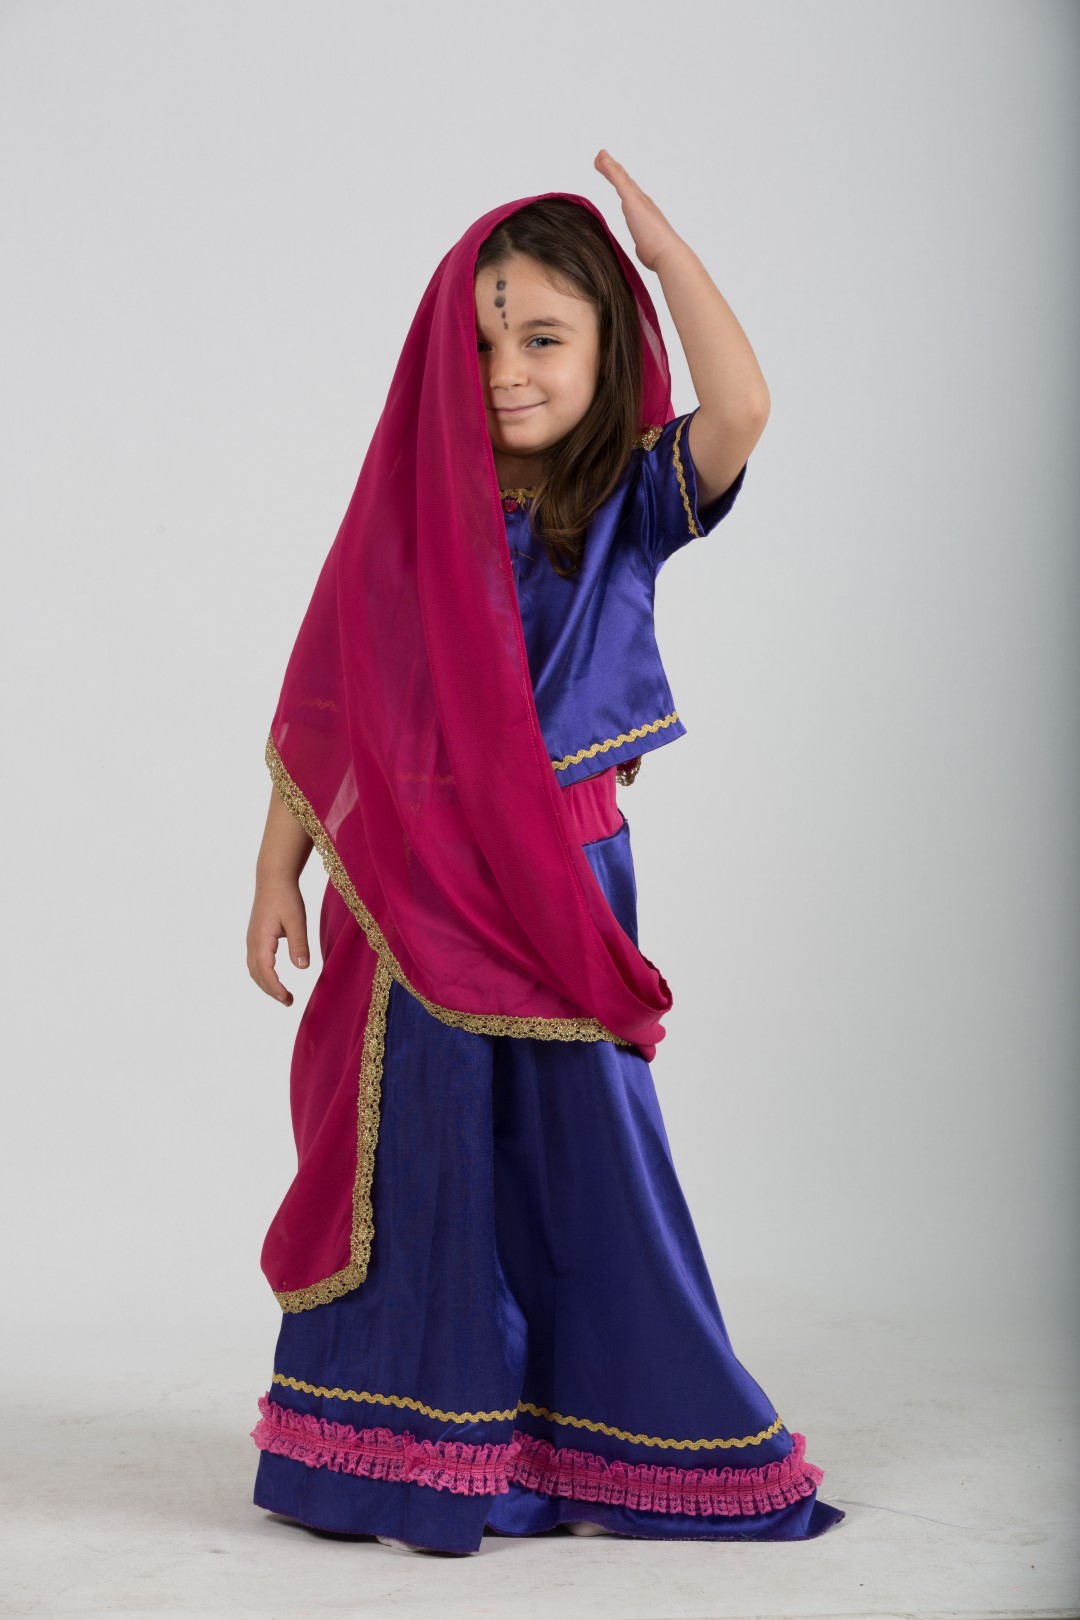 Çocuk Hintli Kız Kostümü